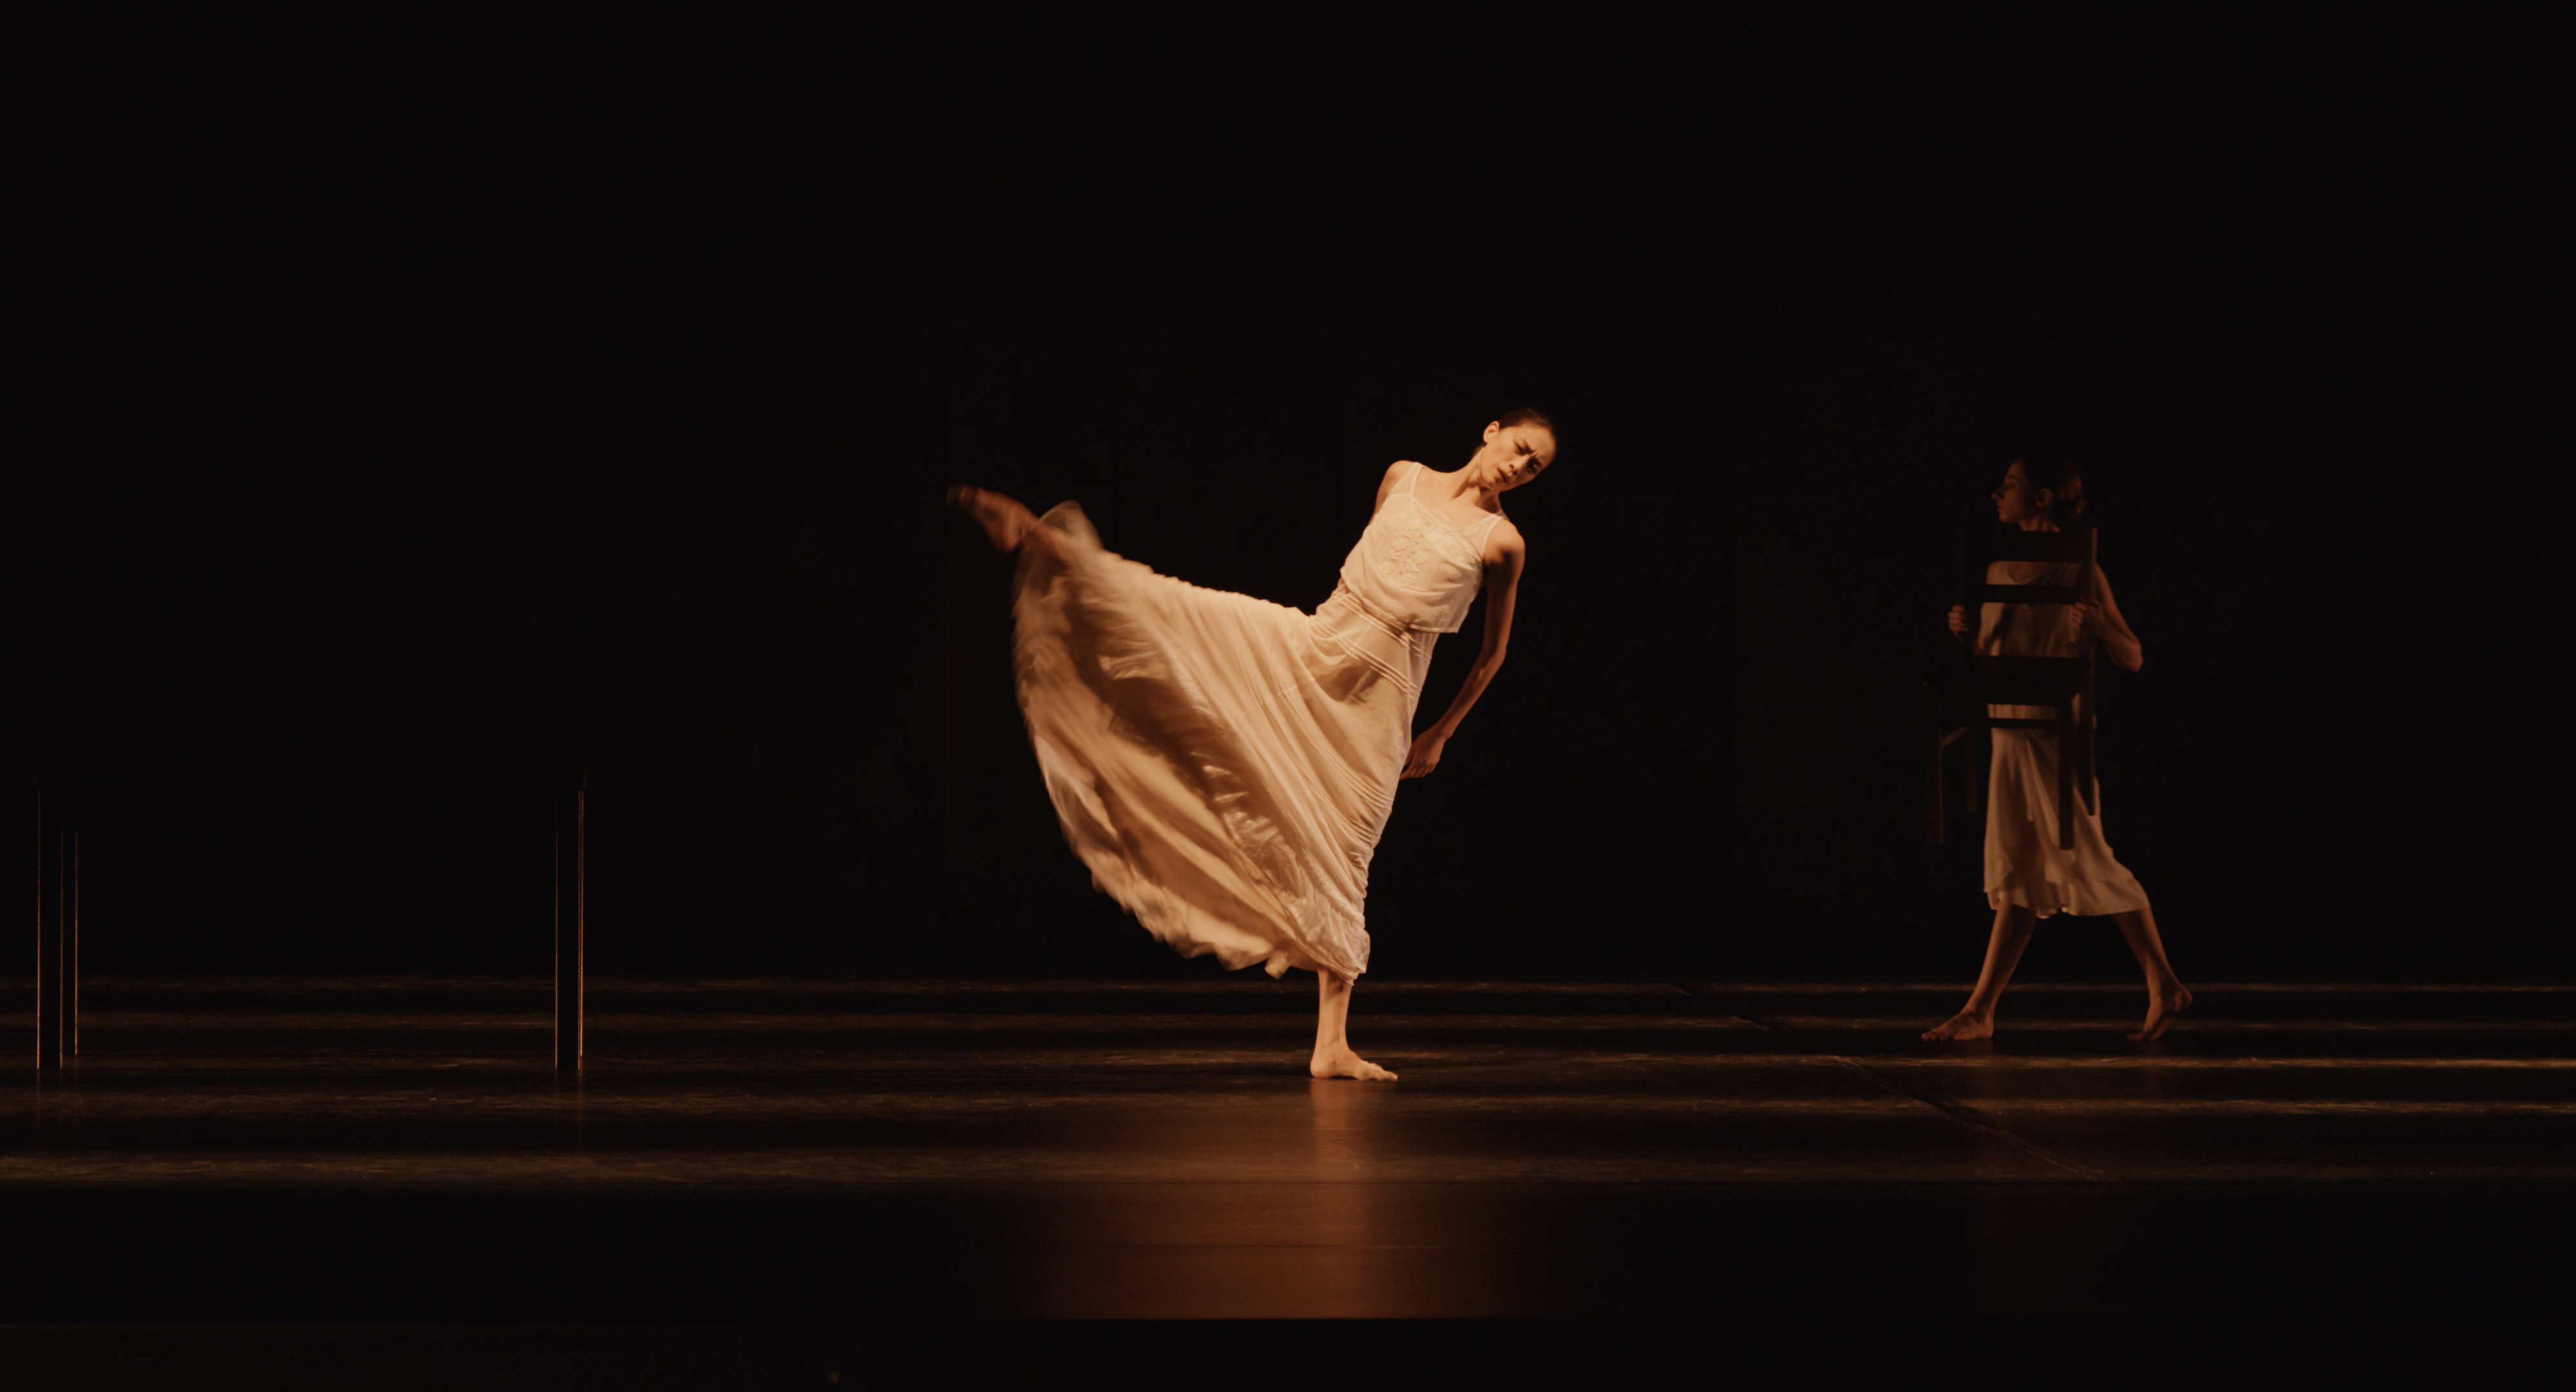 "Dancing Pina", un film de Florian Heinzen-Ziob : répétition de "Iphigénie en Taurine" de Gluck, chorégraphie de Pina Bausch - © Images de Enno Endlicher